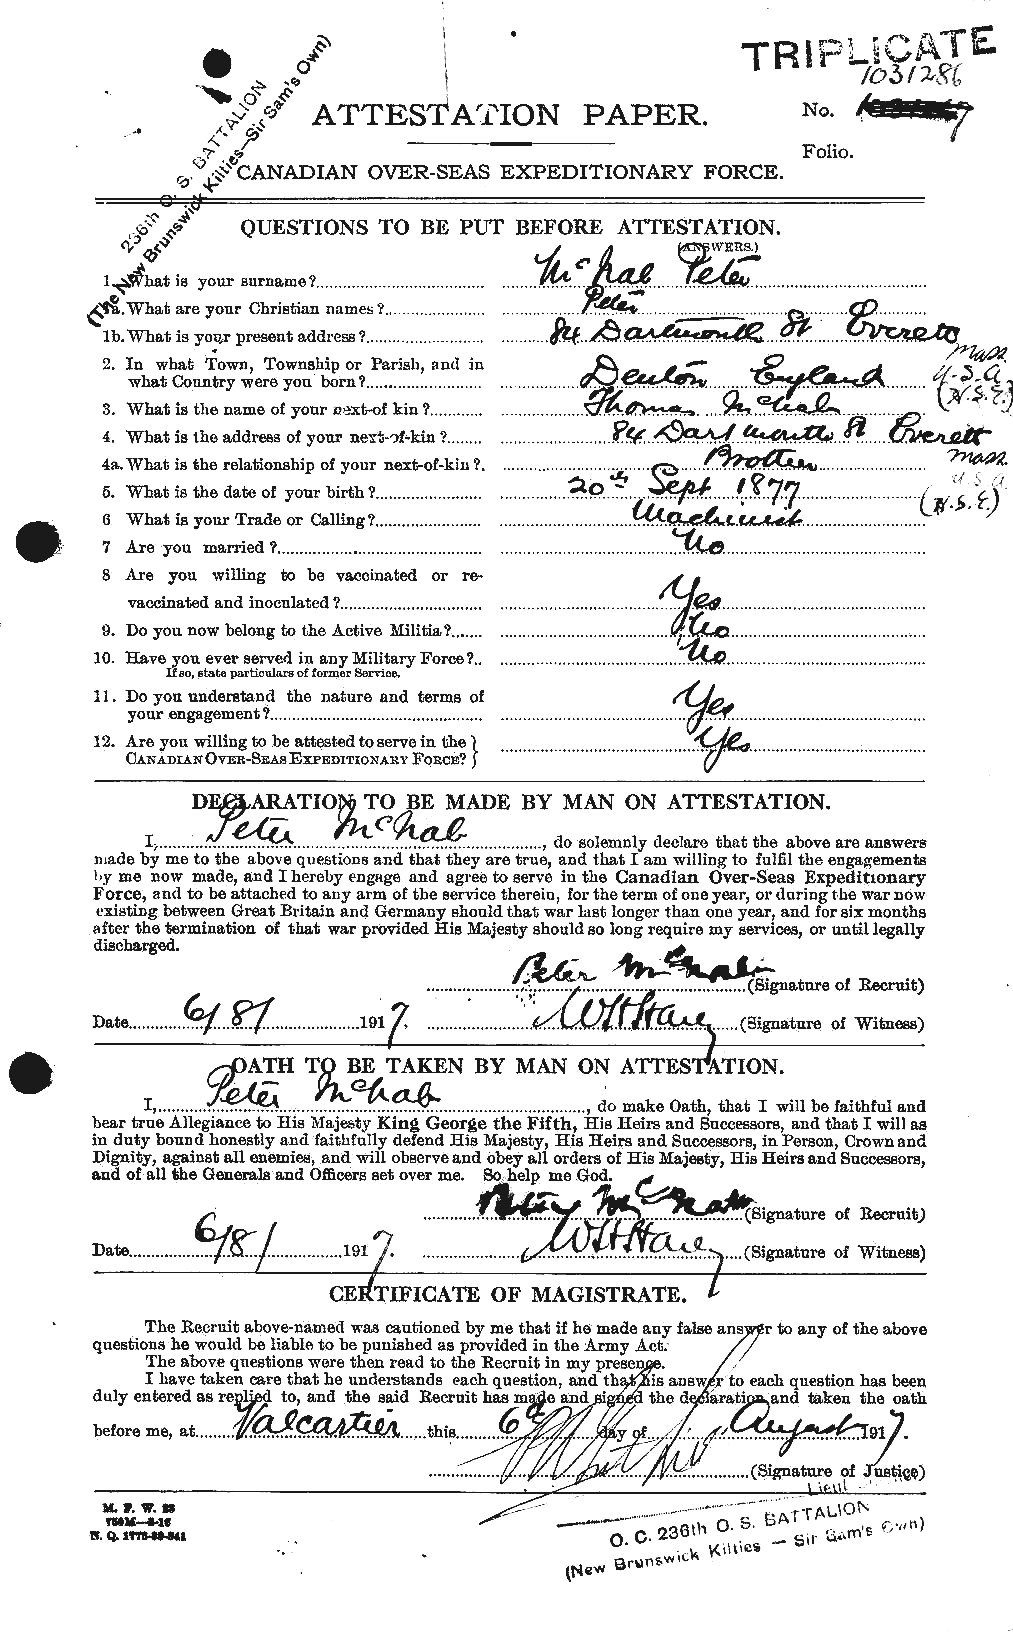 Dossiers du Personnel de la Première Guerre mondiale - CEC 536268a